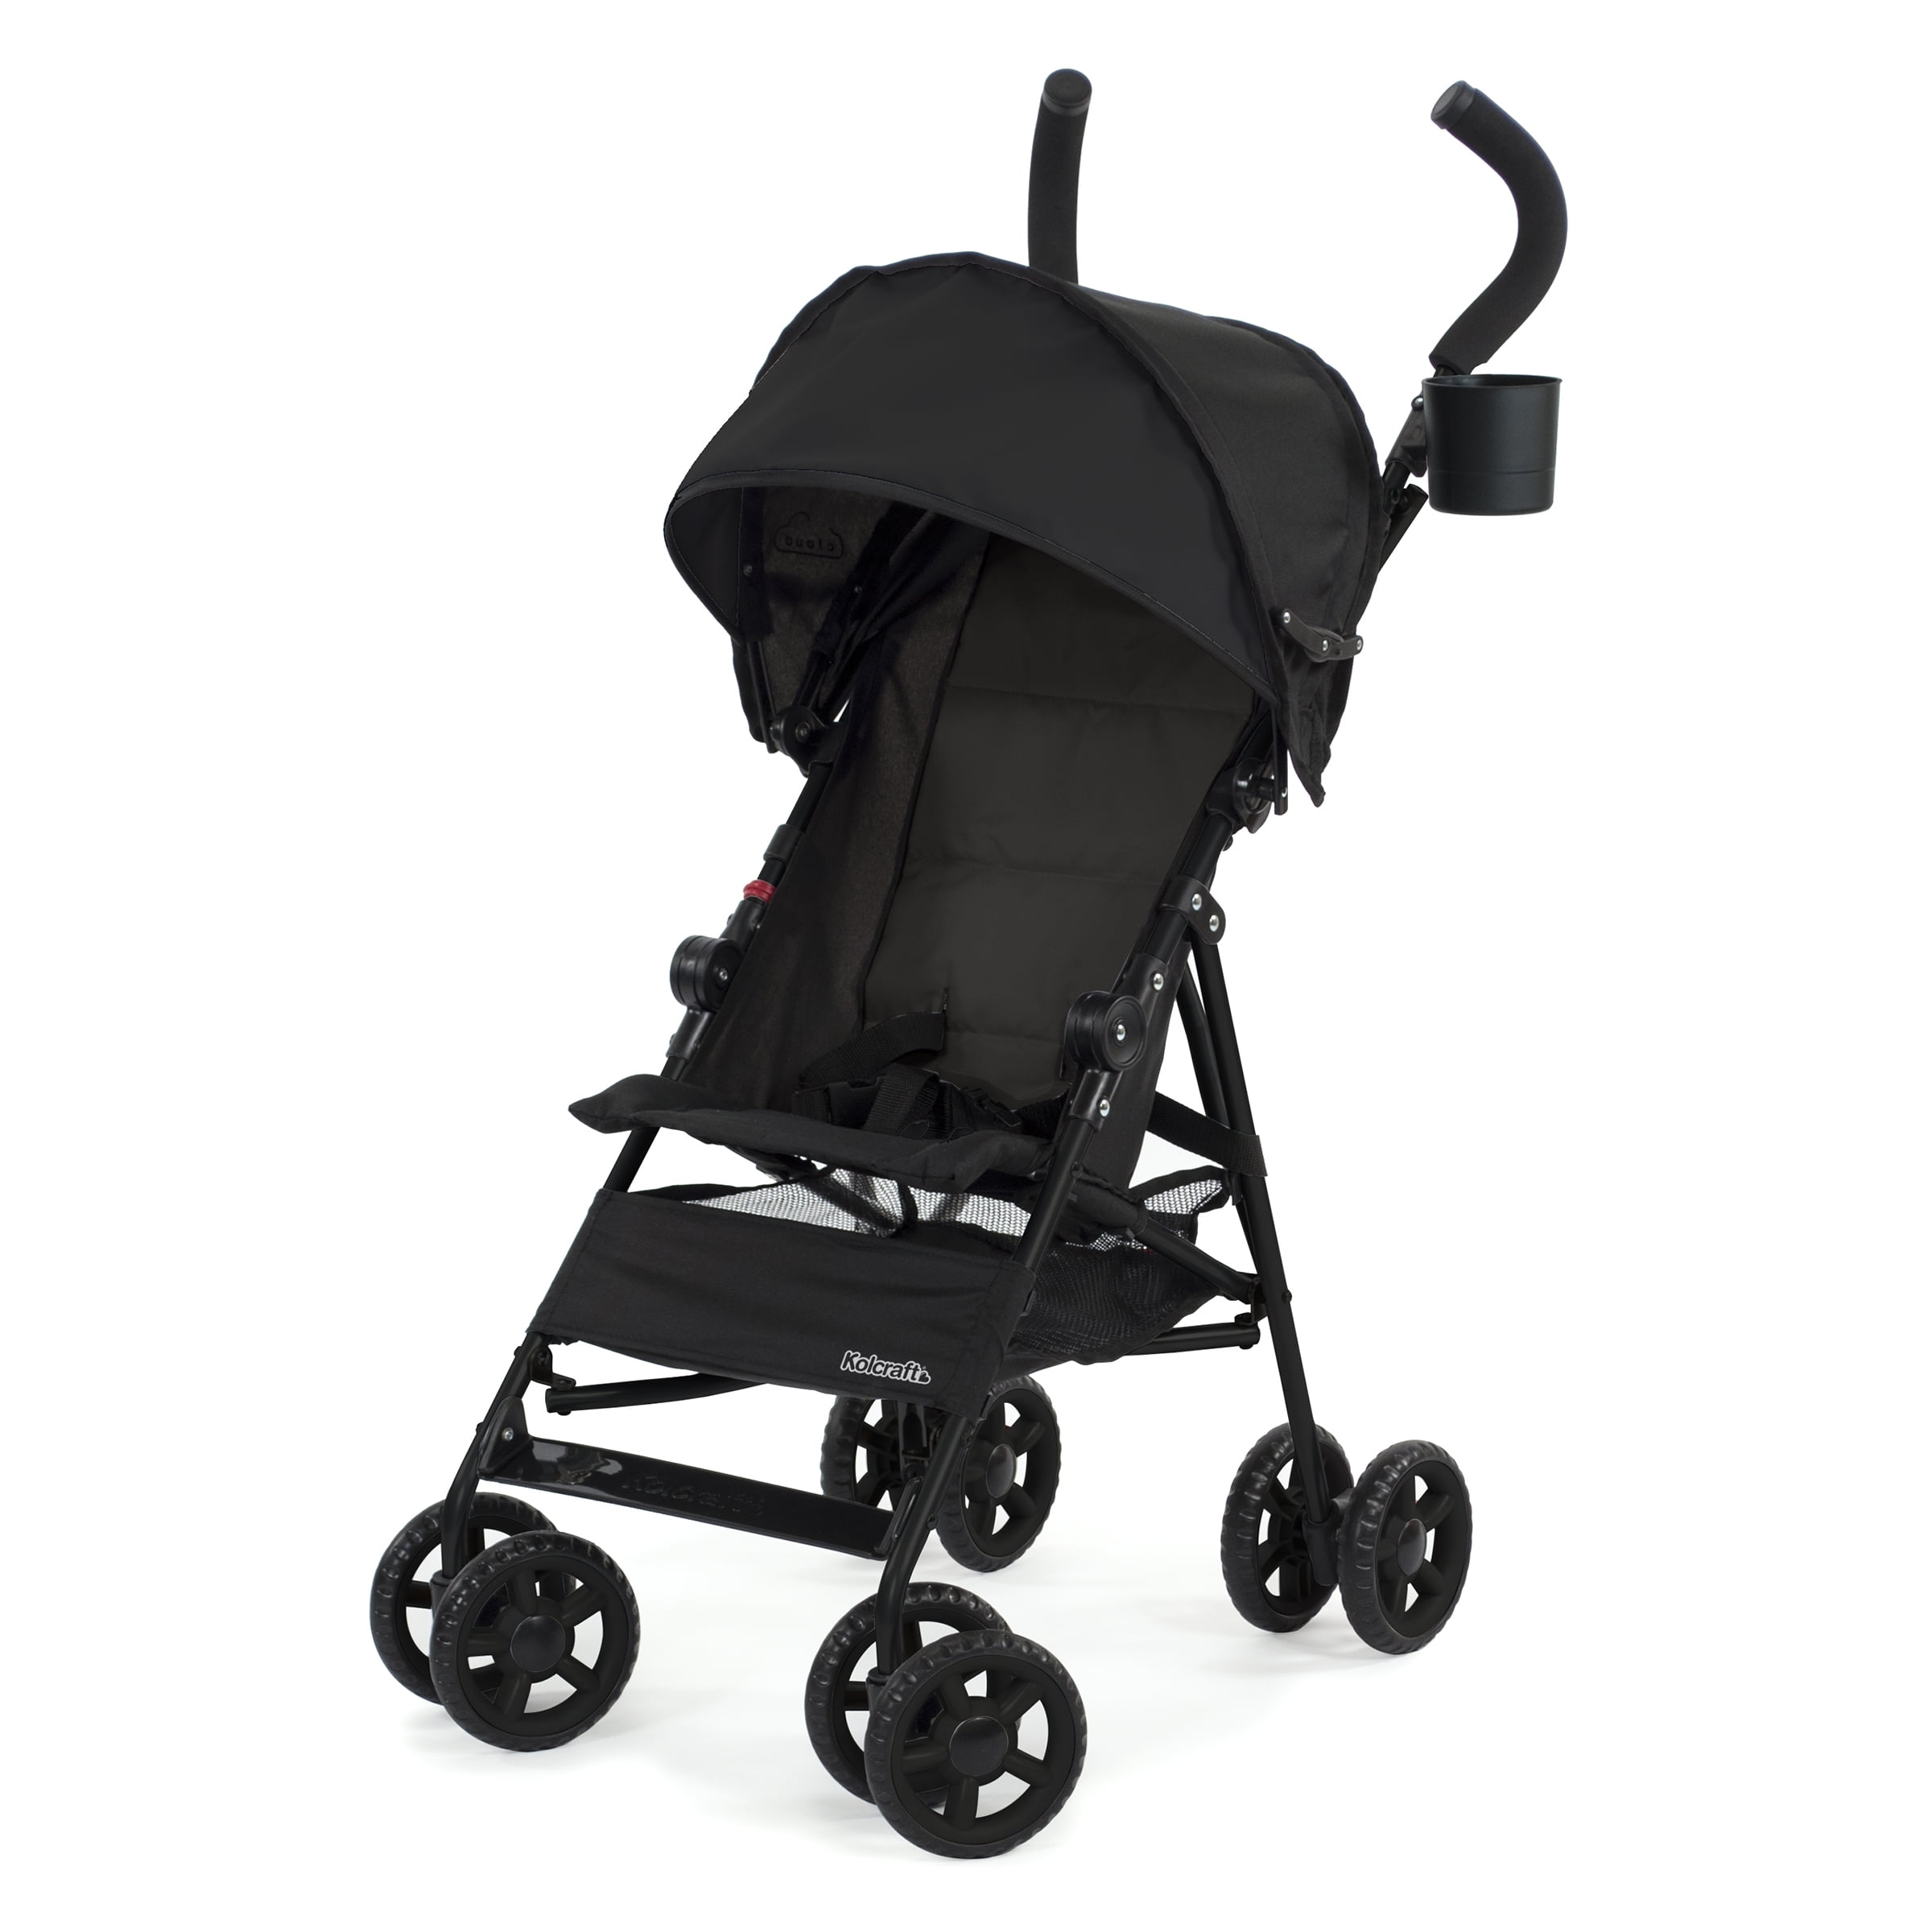 Kolcraft Cloud Umbrella Unisex Stroller Black for Child/Toddler